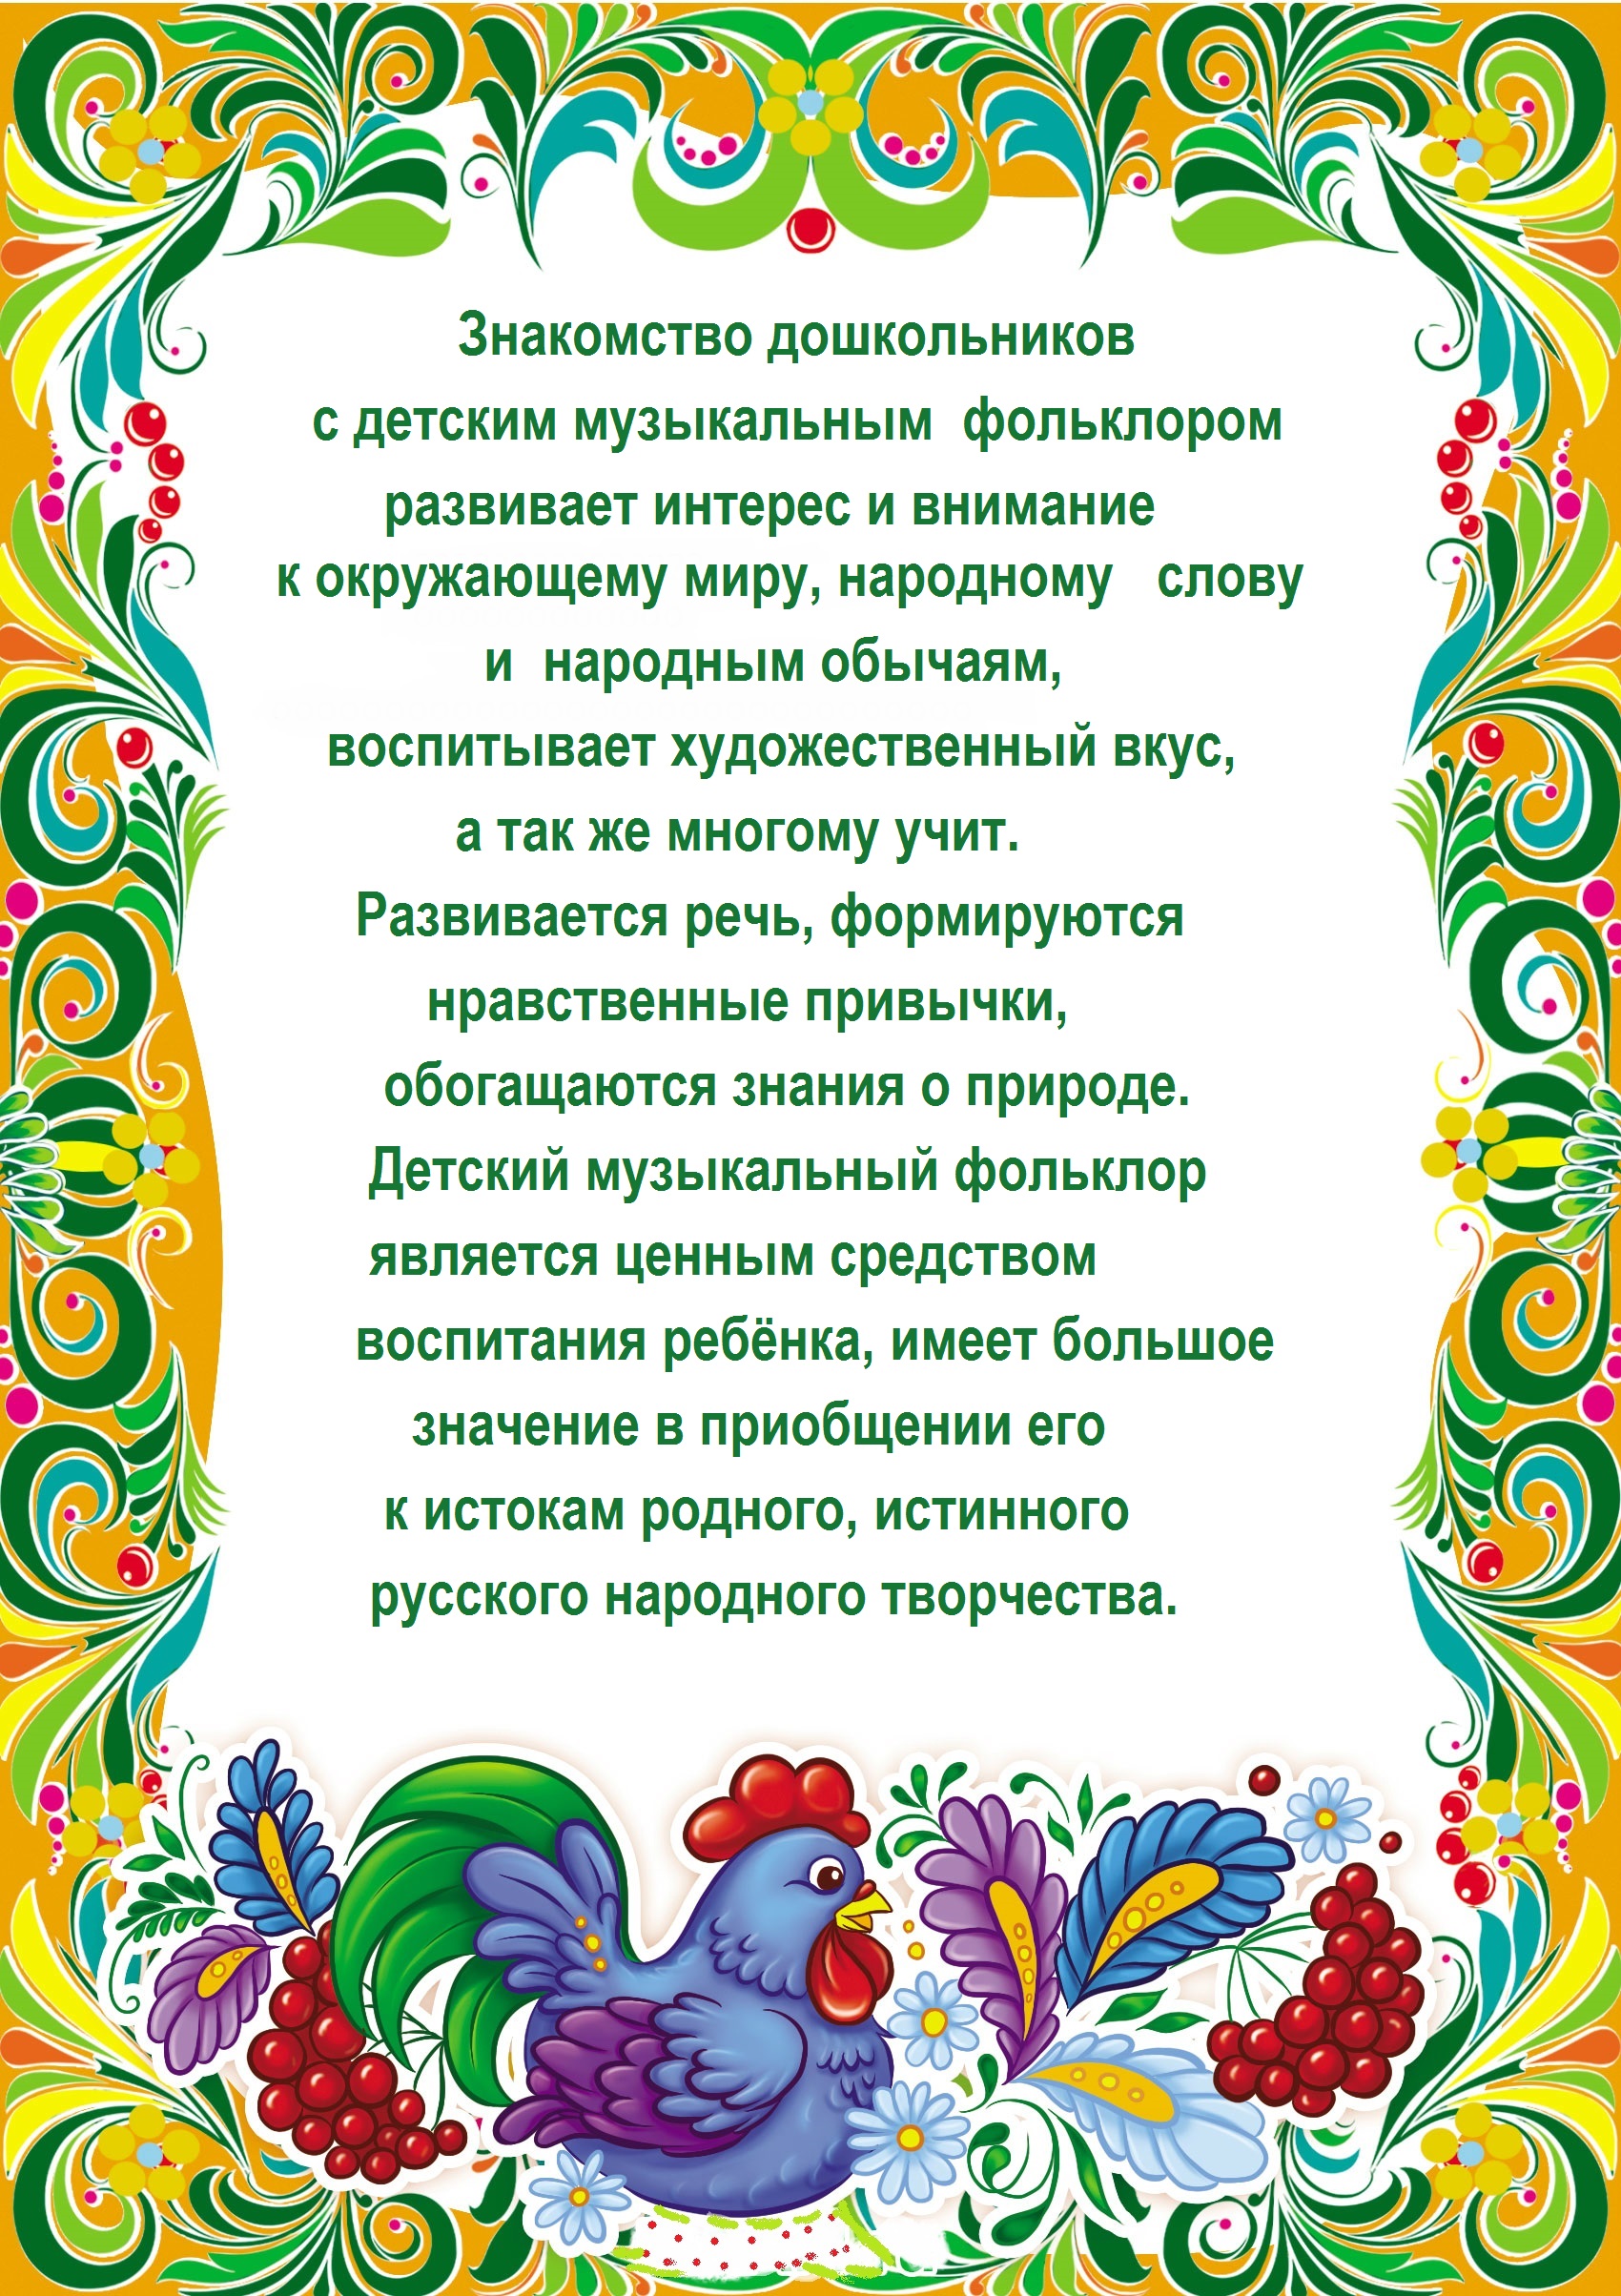 Папка - передвижка для родителей Как приобщить ребёнка к русской культуре